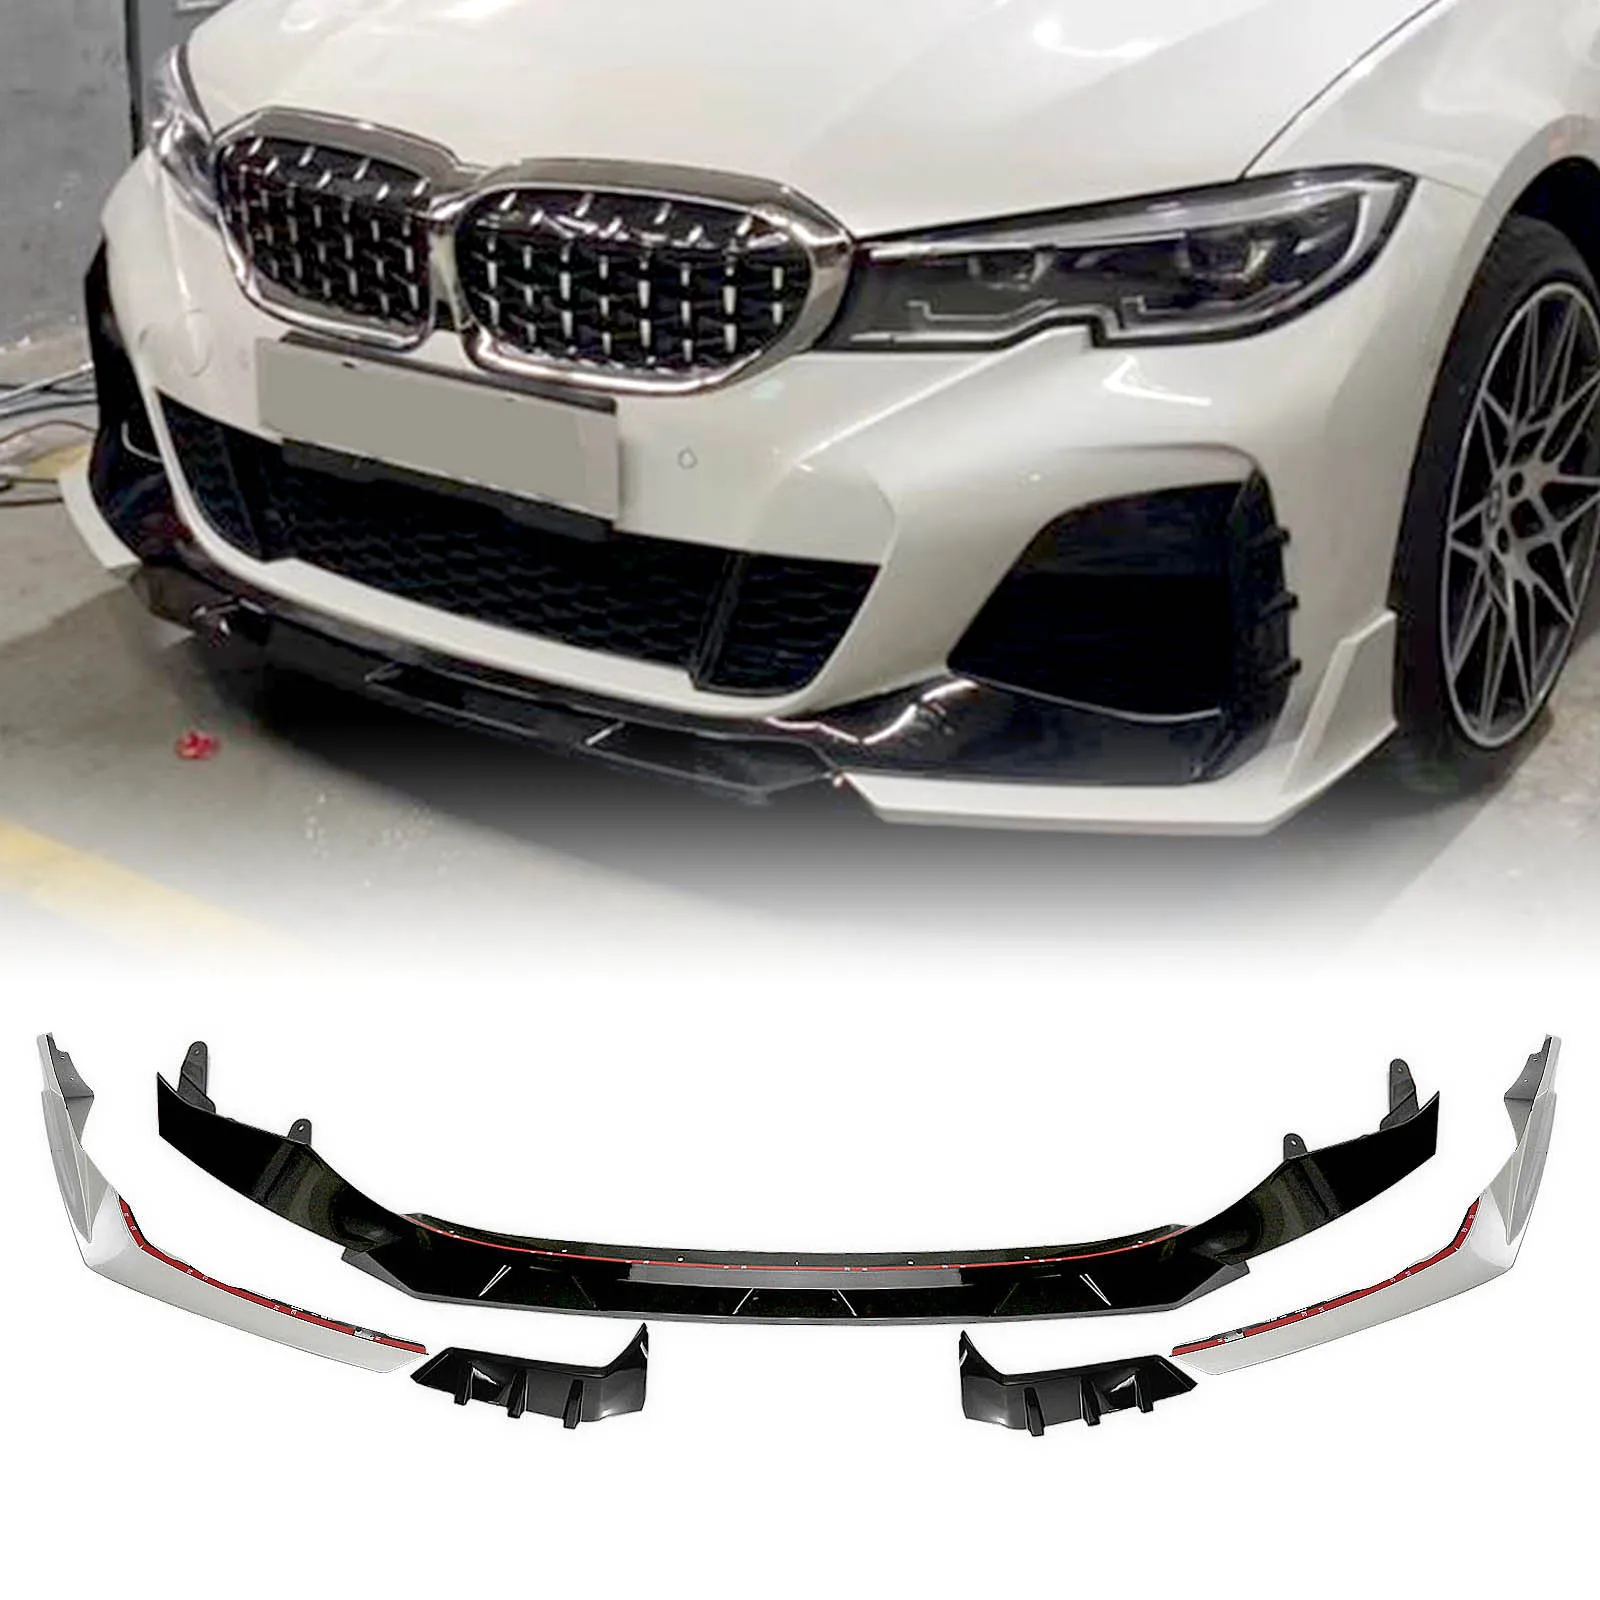 AKASAKA Front Bumper Spoiler Lip For BMW New Gen 3 Series G20 G28 330i M340i 2019-2021 M Sport Car Lower Body Kit Blade Splitter